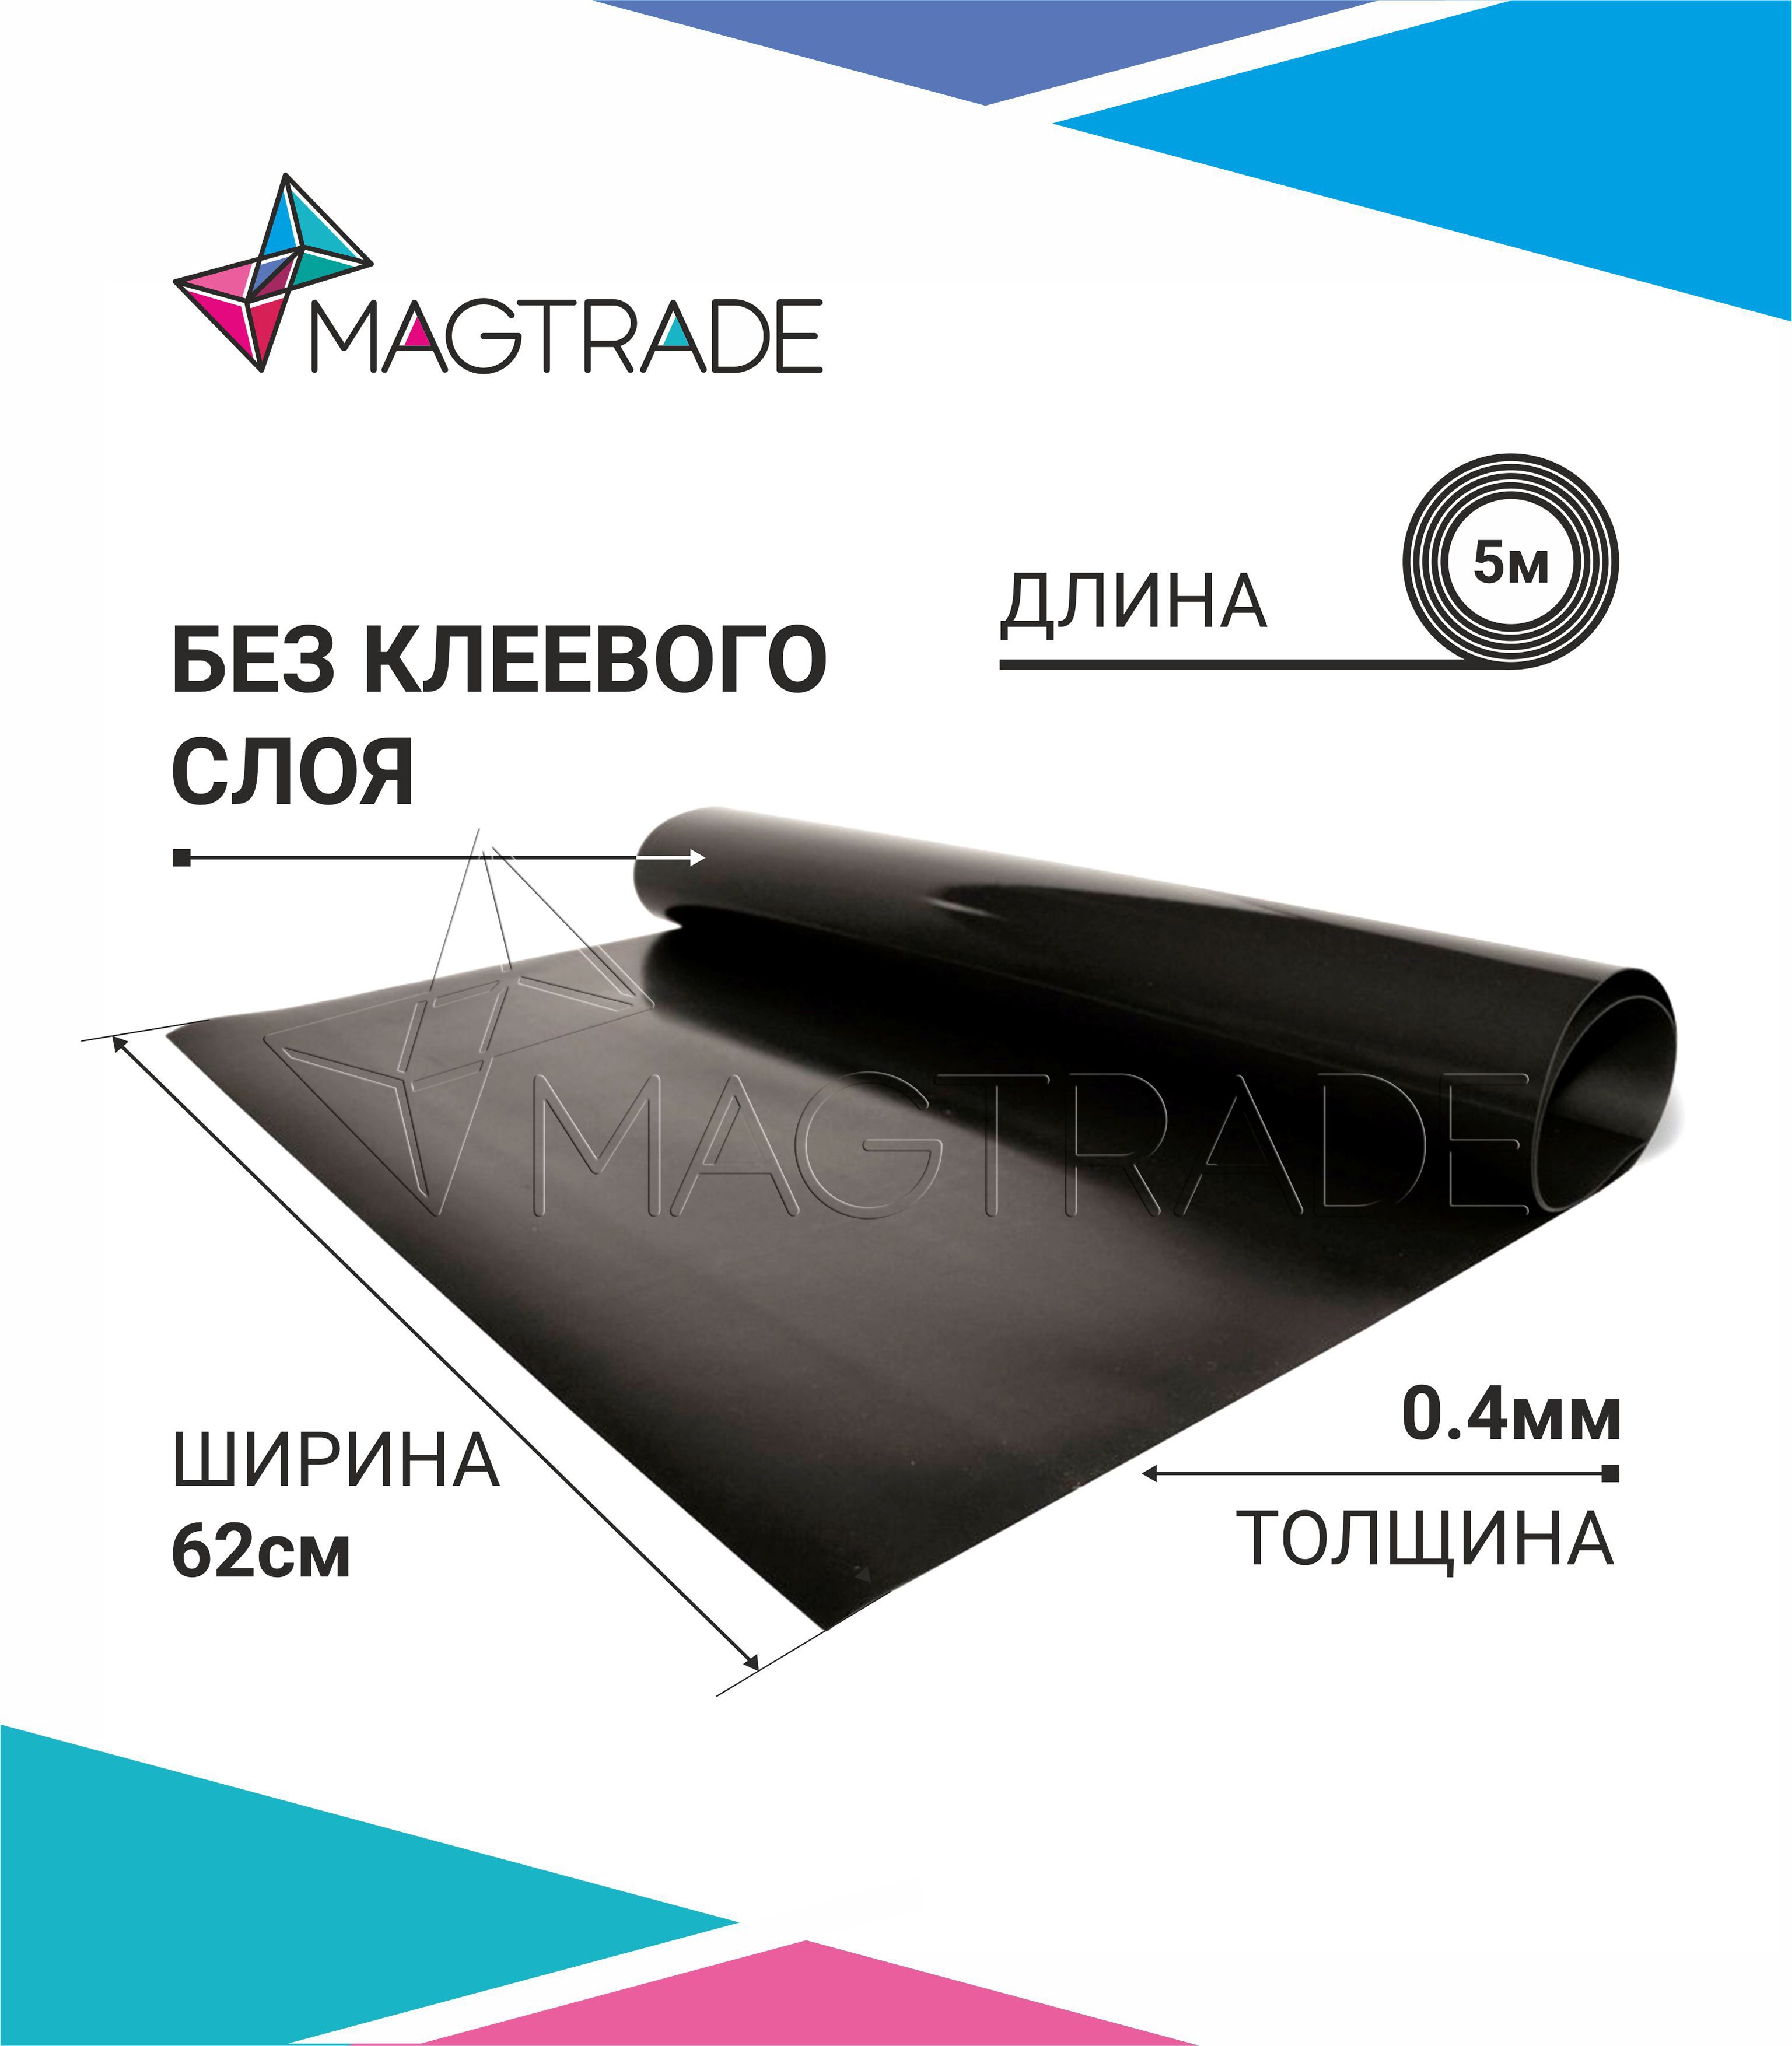 Магнитный винил MAGTRADE без клеевого слоя 0,62 х 5 м, толщина 0,4 мм, лист 5 метров магнитный винил magtrade с клеем толщина 0 9 мм лист 3м